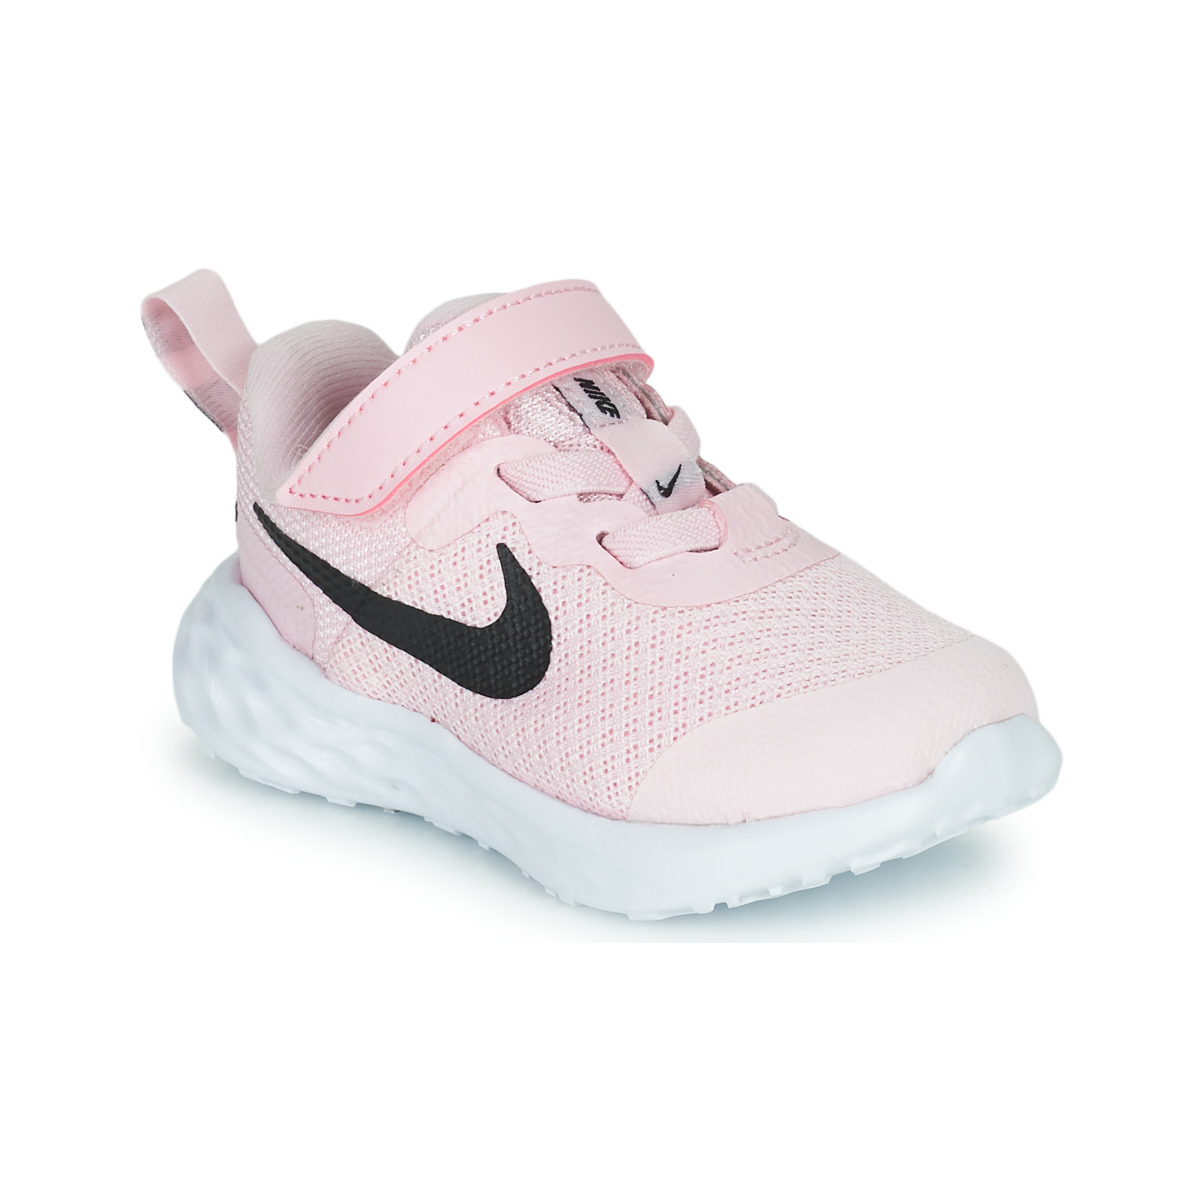 Schoenen Kinderen Allround Nike Nike Revolution 6 Roze / Zwart